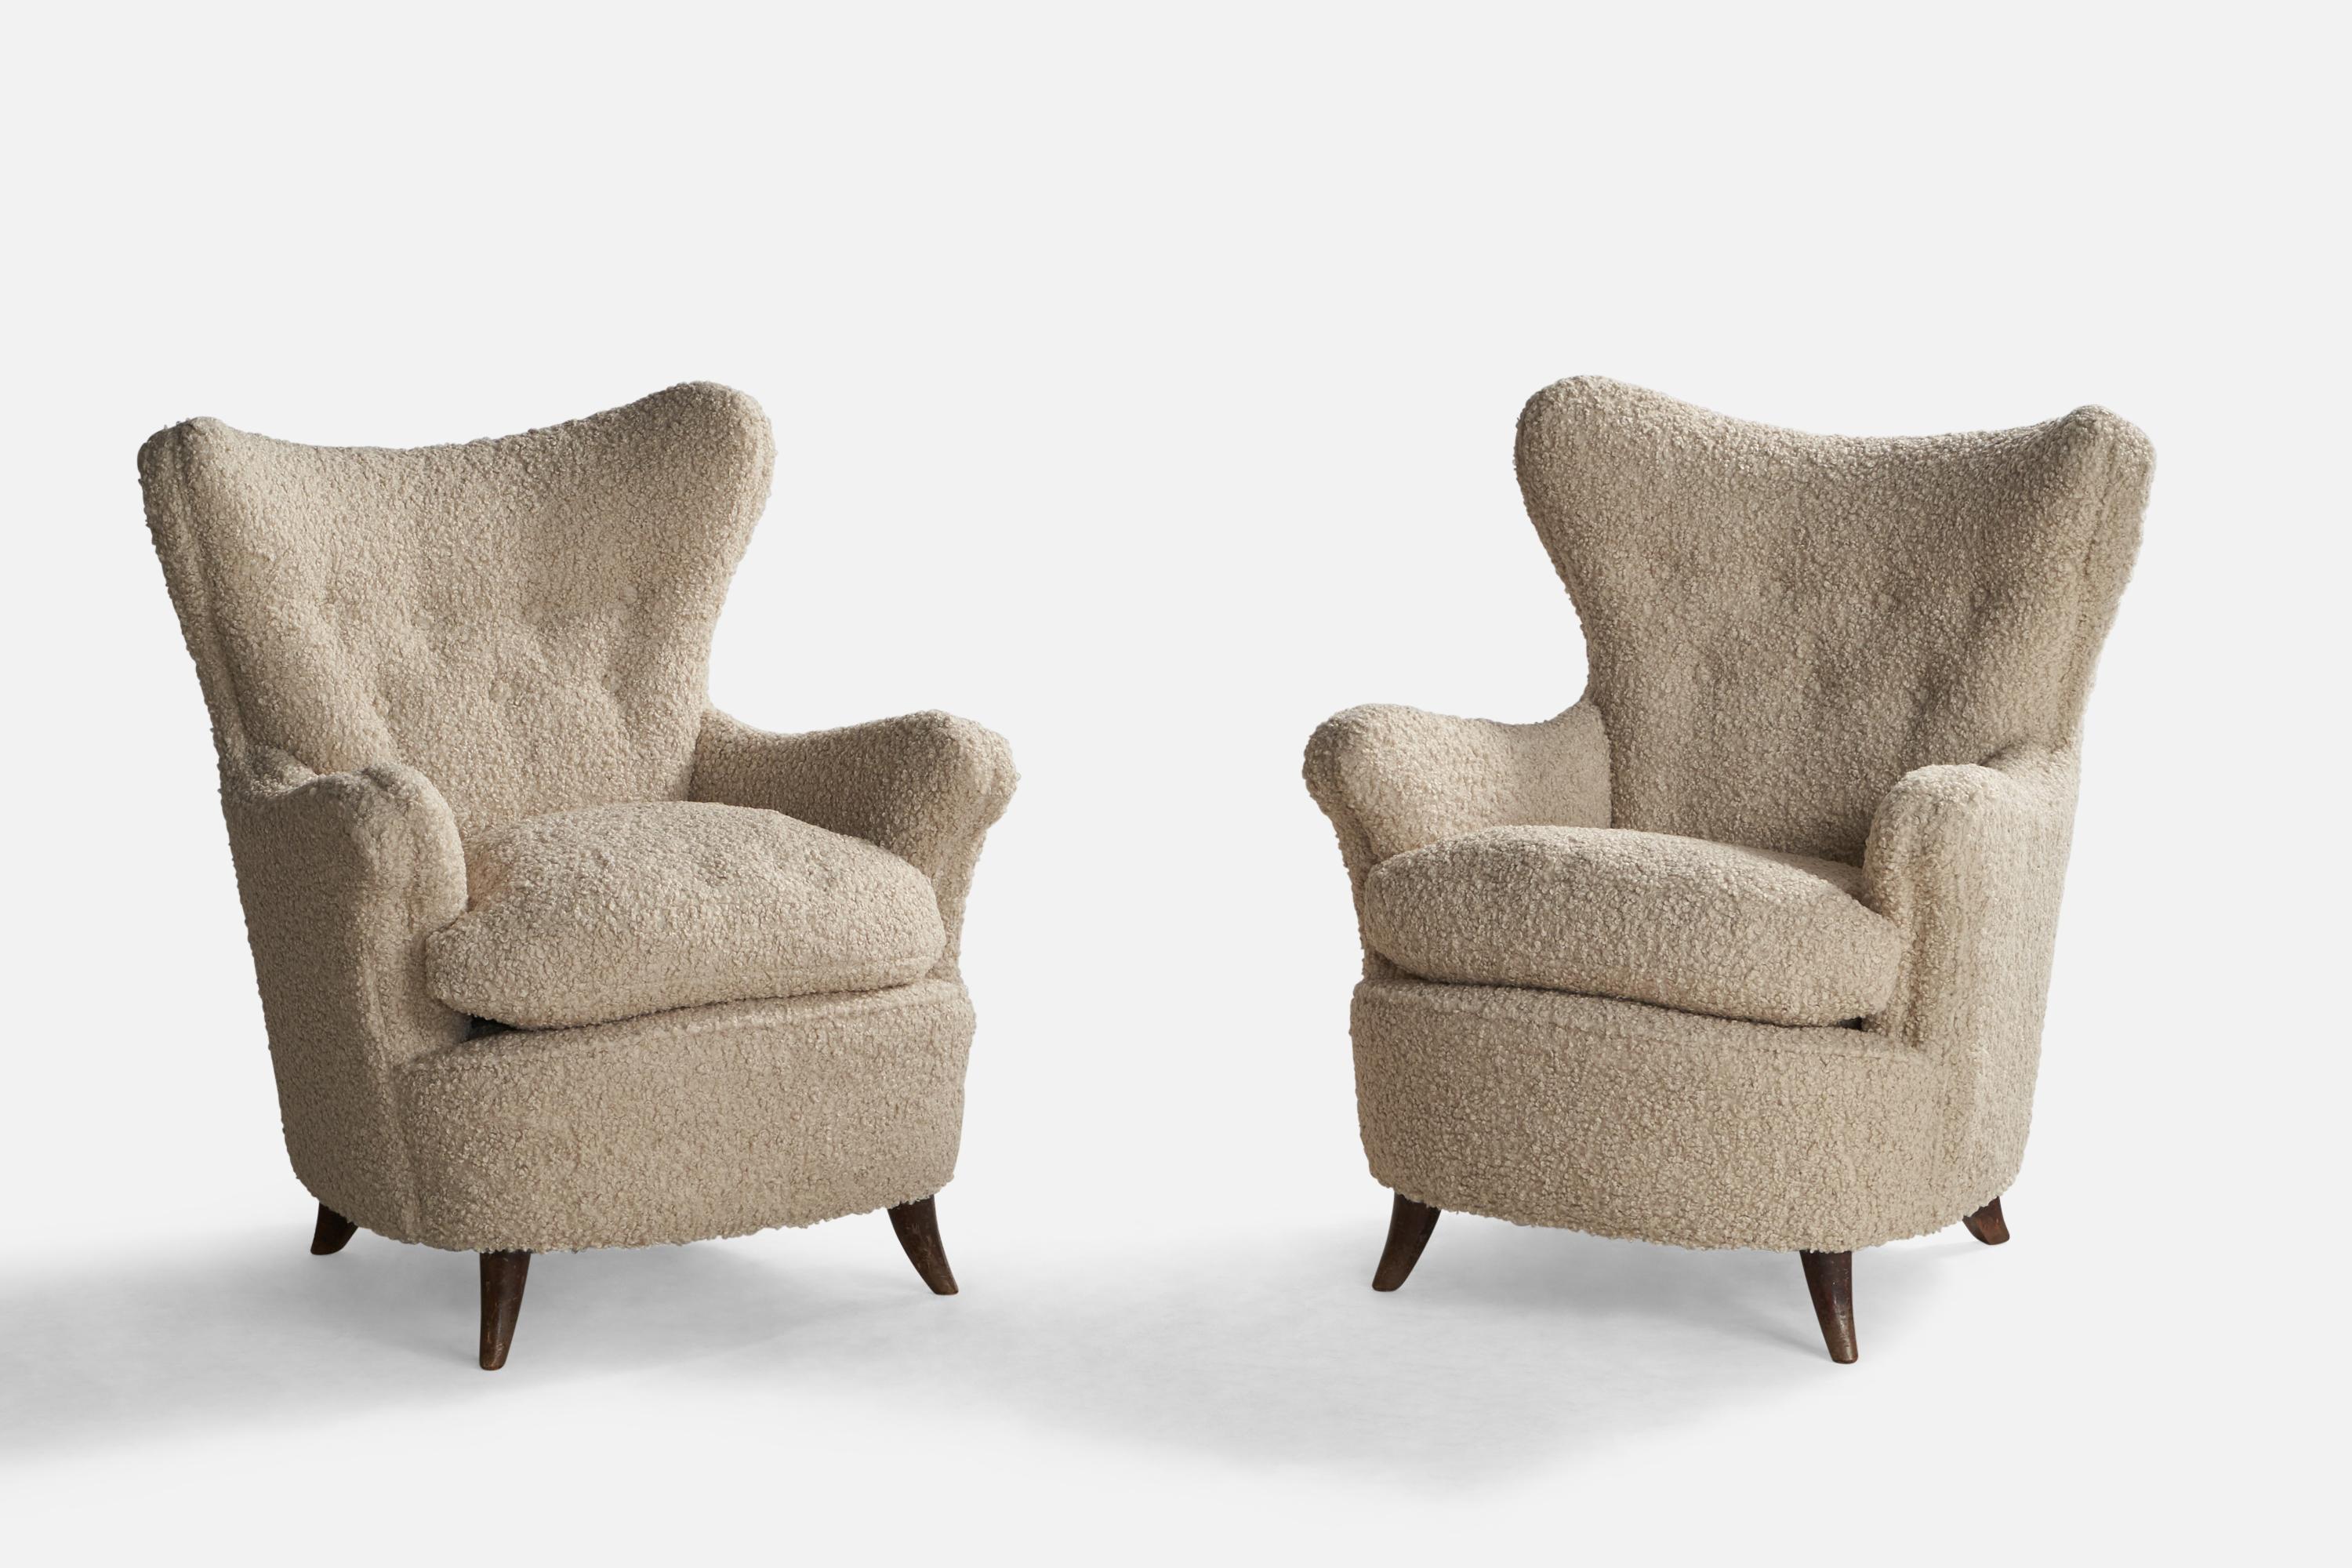 Paire de chaises longues en bois teinté foncé et tissu bouclé blanc cassé, conçues par Osvaldo Borsani et produites par Arredamenti Borsani, Italie, années 1940.

Hauteur du siège : 18.75